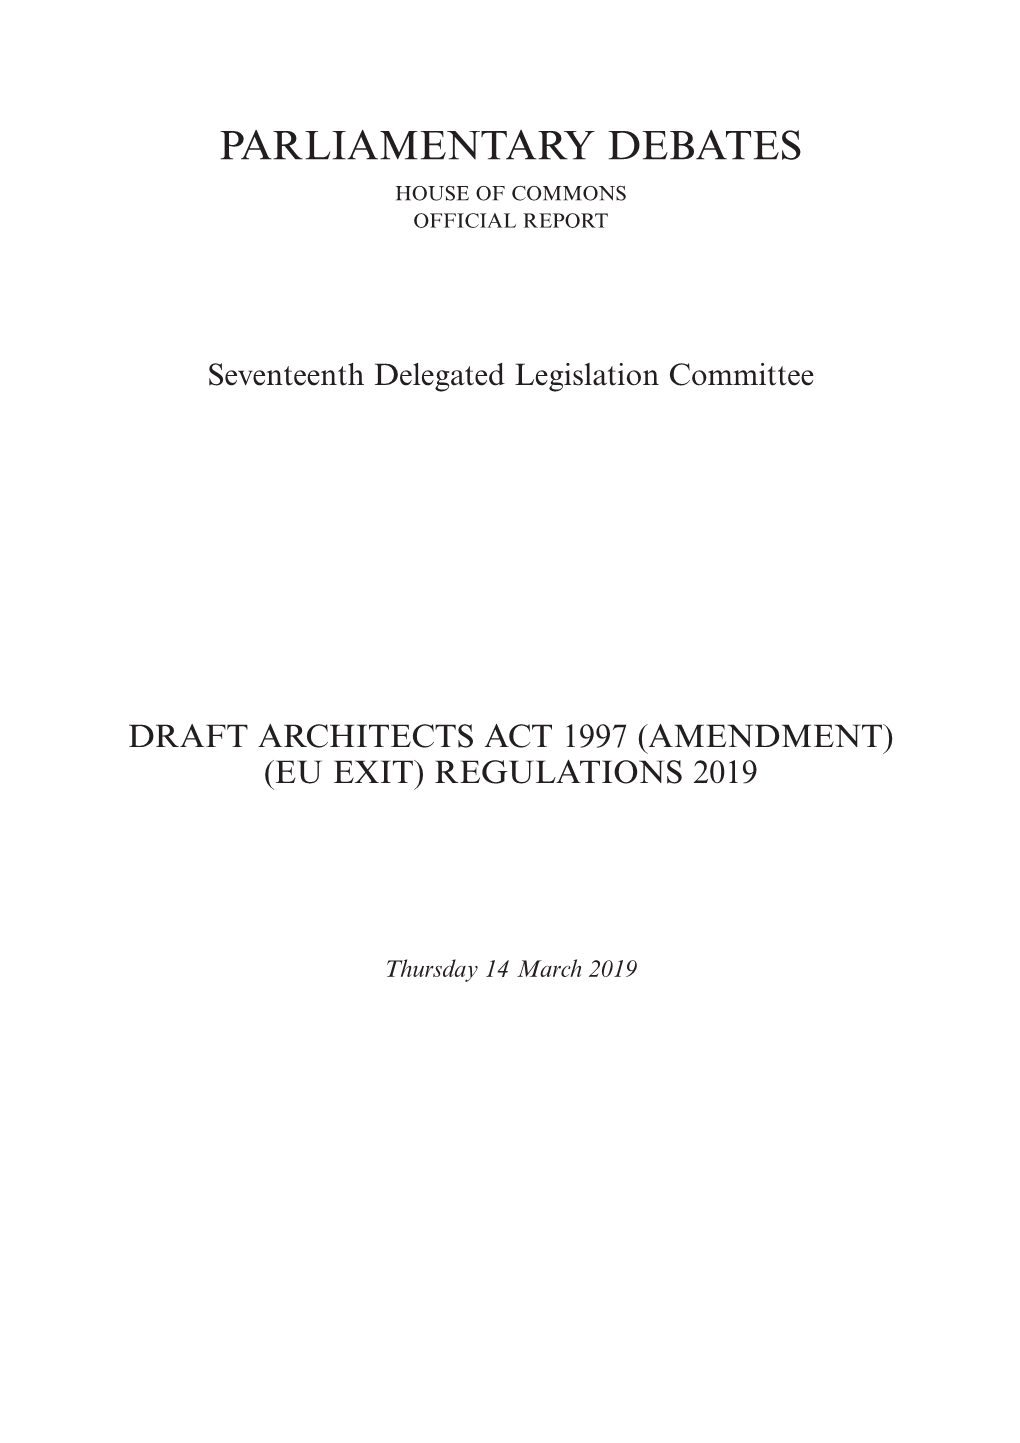 Draft Architects Act 1997 (Amendment) (EU Exit) Regulations 2019 0.08 MB